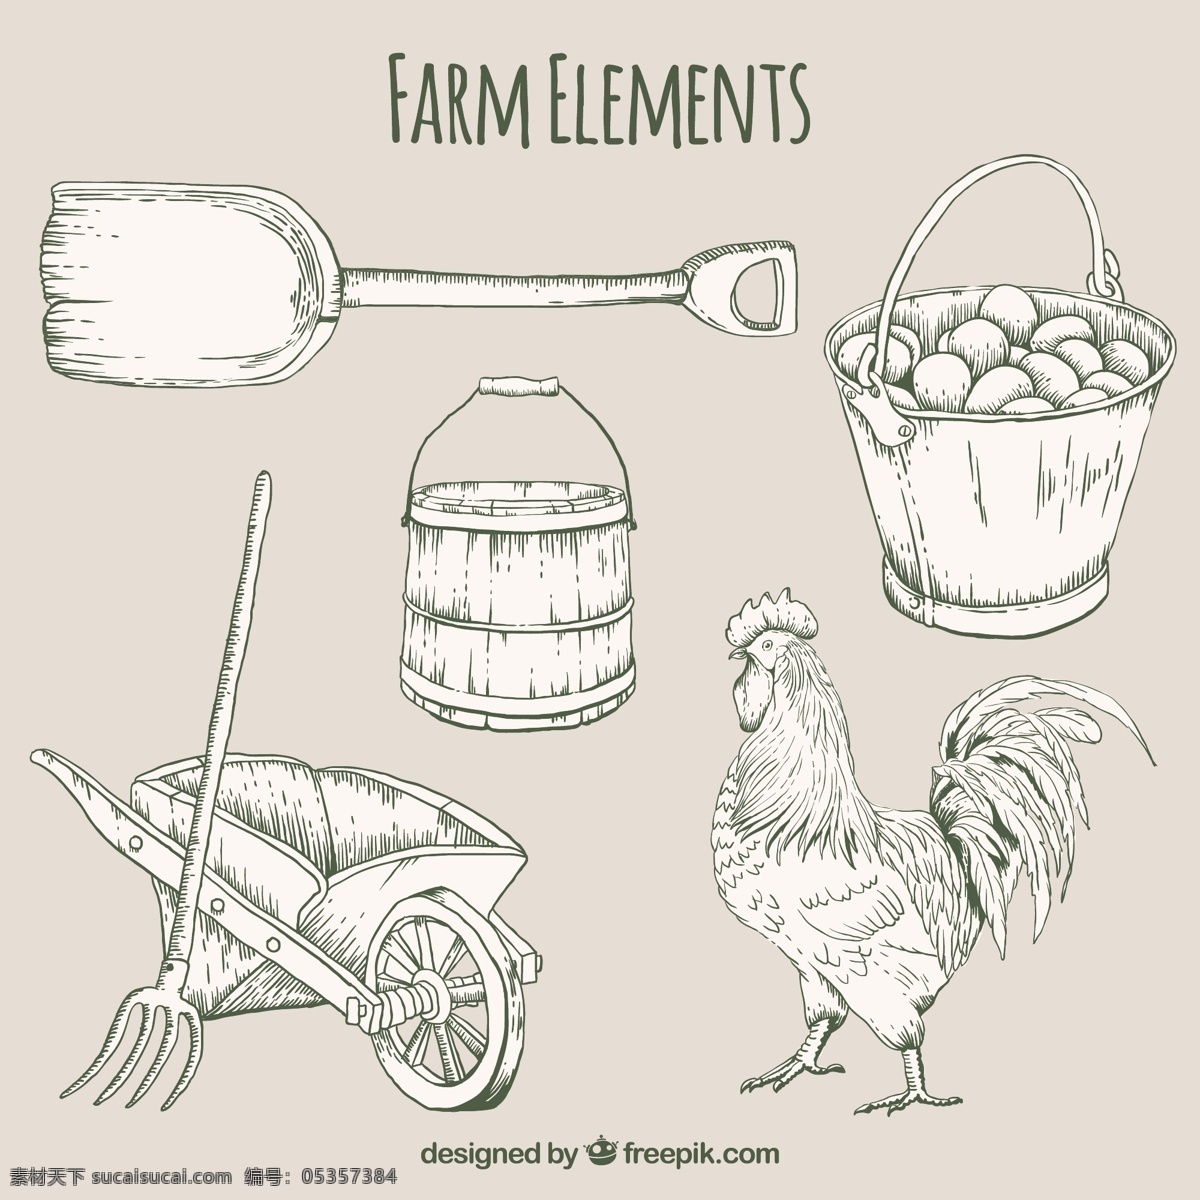 手工 绘制 农场 元素 手 自然 动物 手绘 生态 有机 绘画 车 斗 鸡 蛋 抽纱 农业 农村 铲 草图 白色